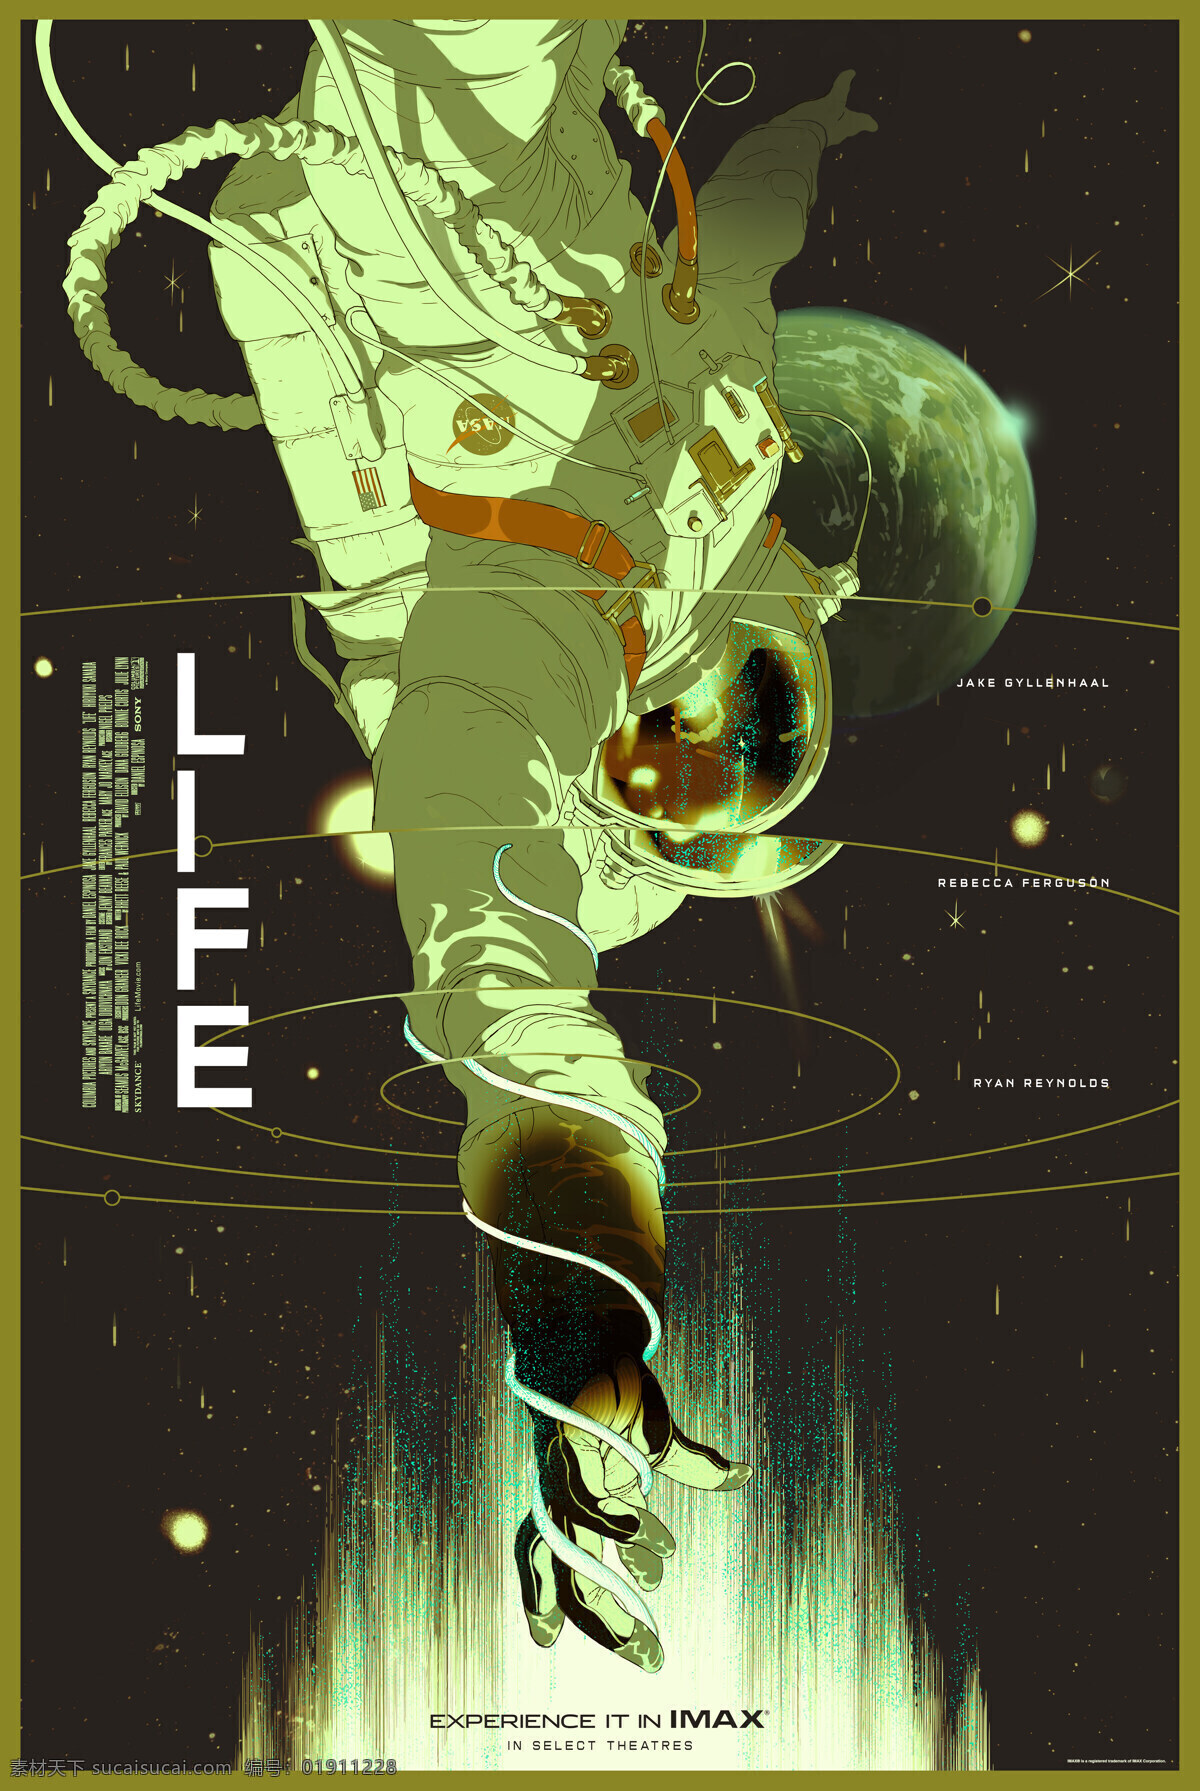 异星觉醒 异星智慧 生命 国际空间站 宇航员 异形 外星人 电影海报 2017 movie material 文化艺术 影视娱乐